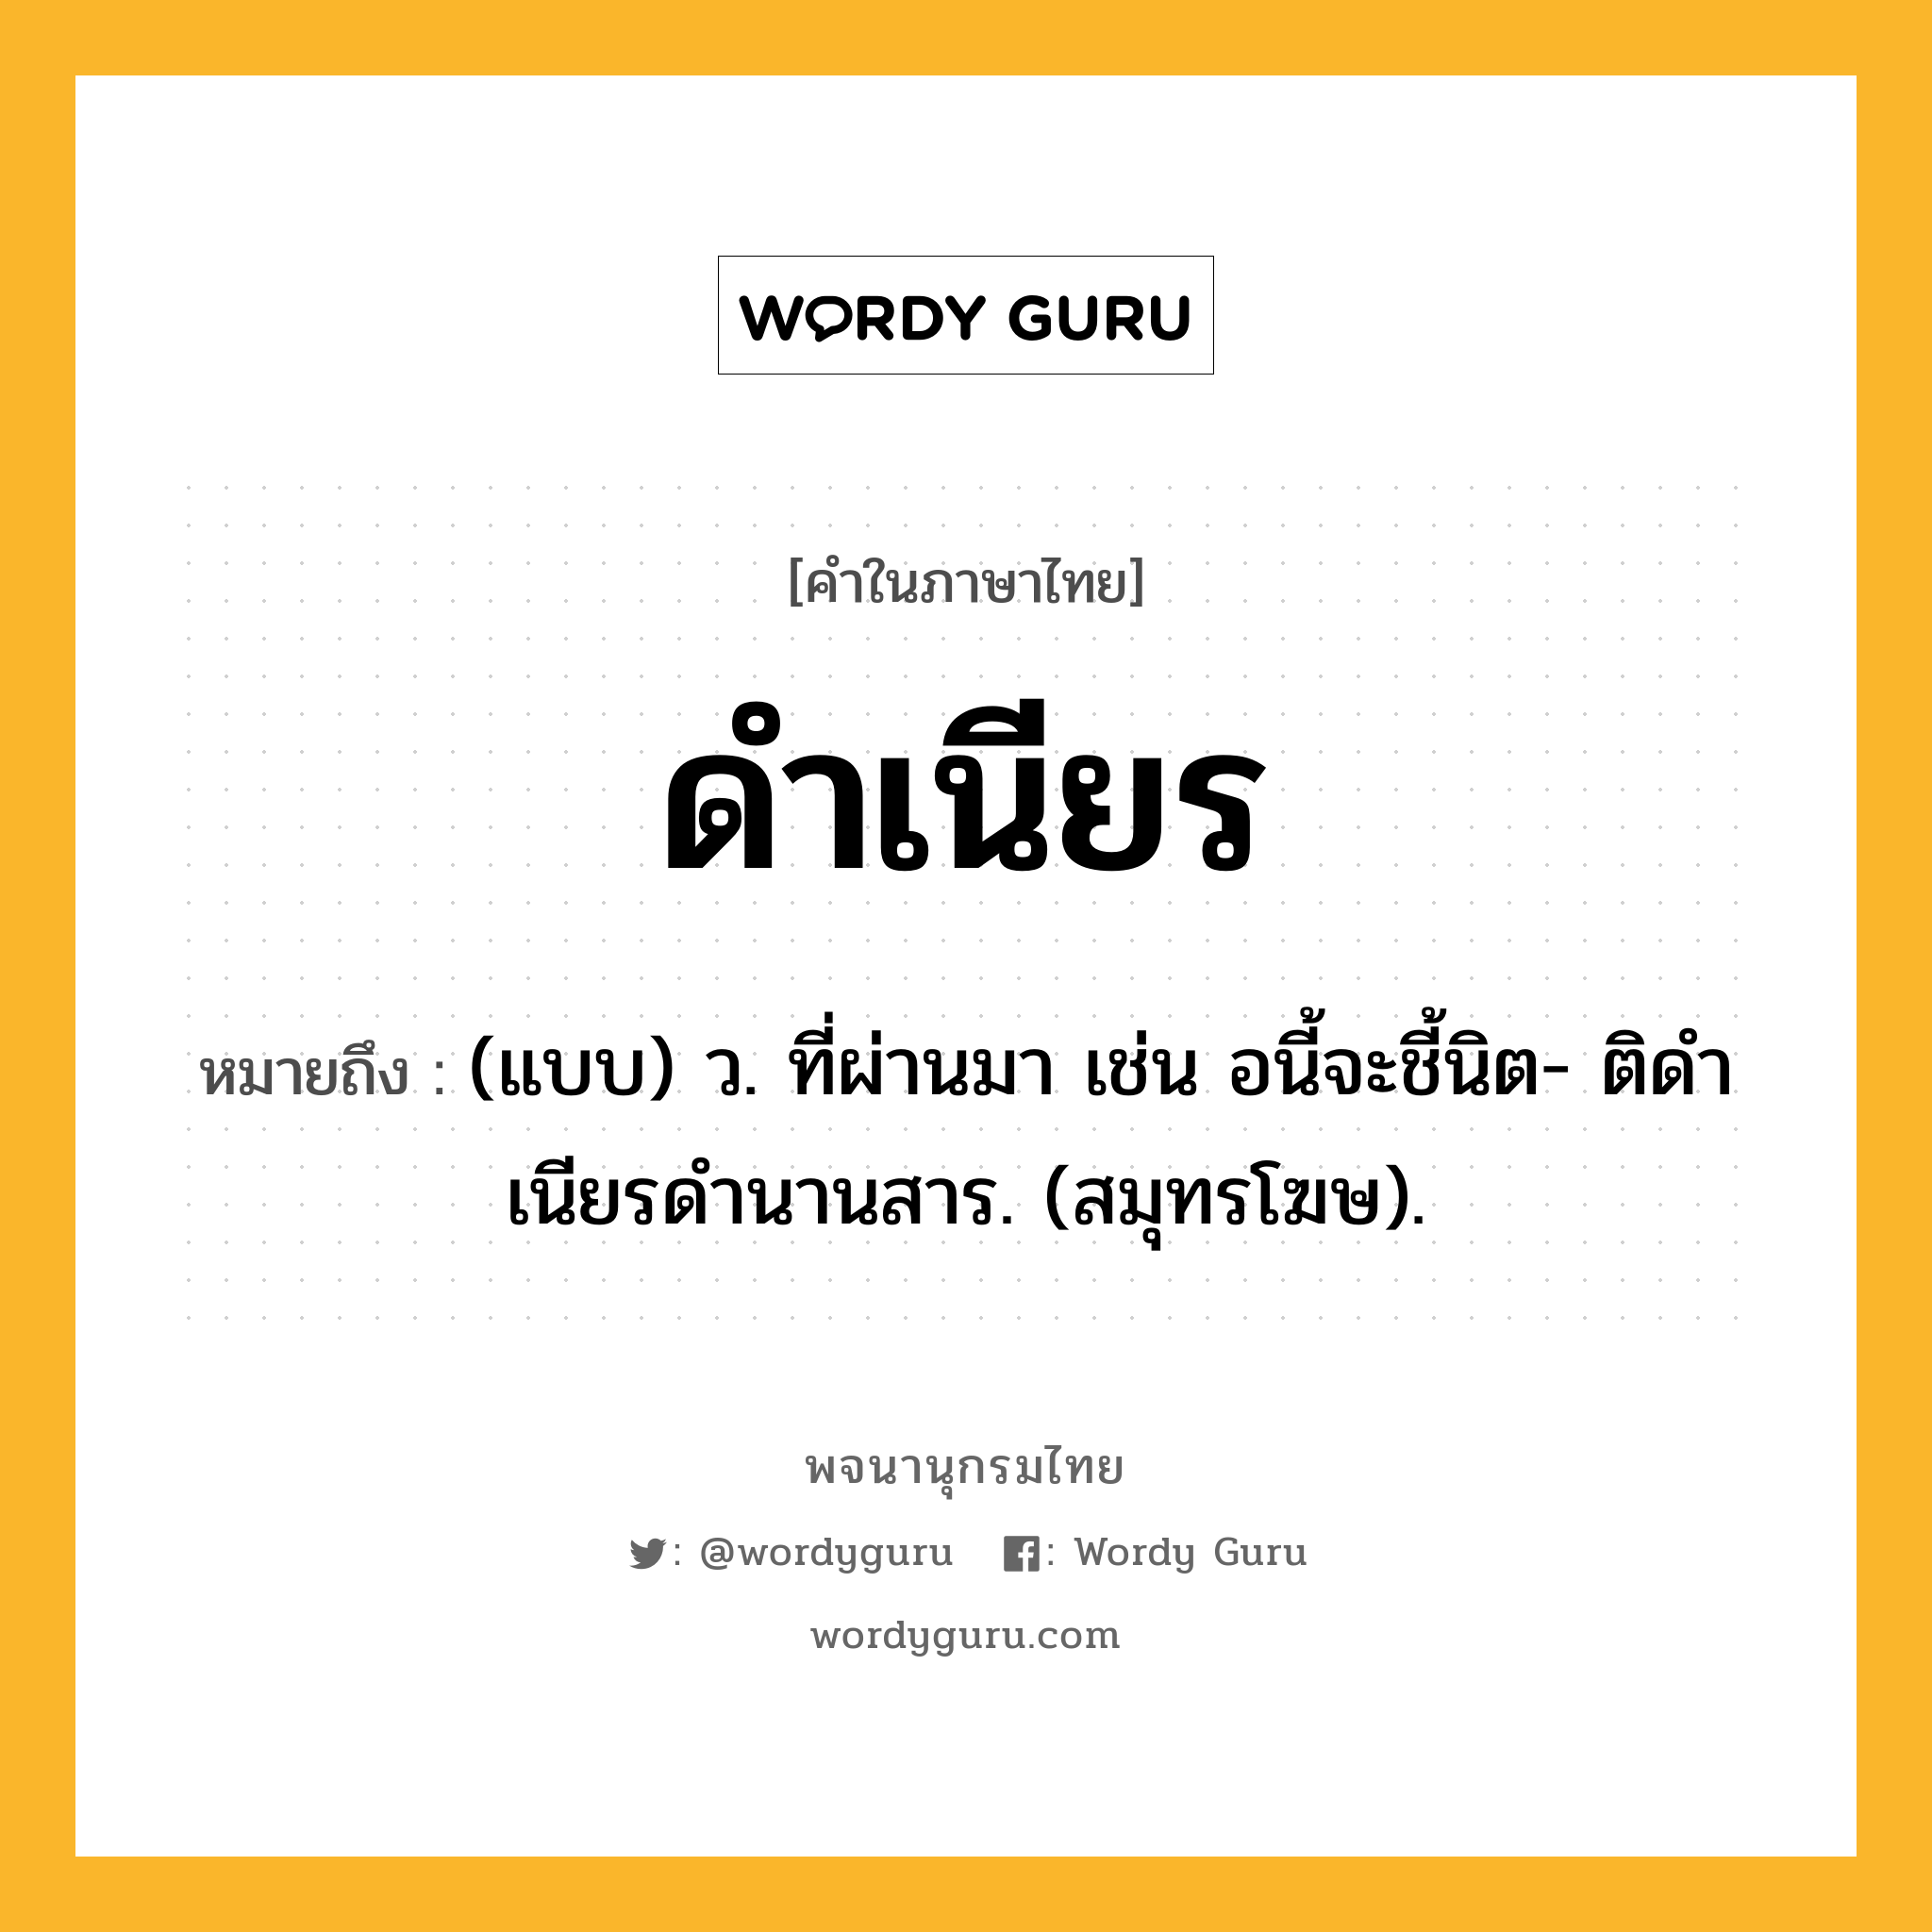 ดำเนียร ความหมาย หมายถึงอะไร?, คำในภาษาไทย ดำเนียร หมายถึง (แบบ) ว. ที่ผ่านมา เช่น อนี้จะชี้นิต- ติดําเนียรดํานานสาร. (สมุทรโฆษ).